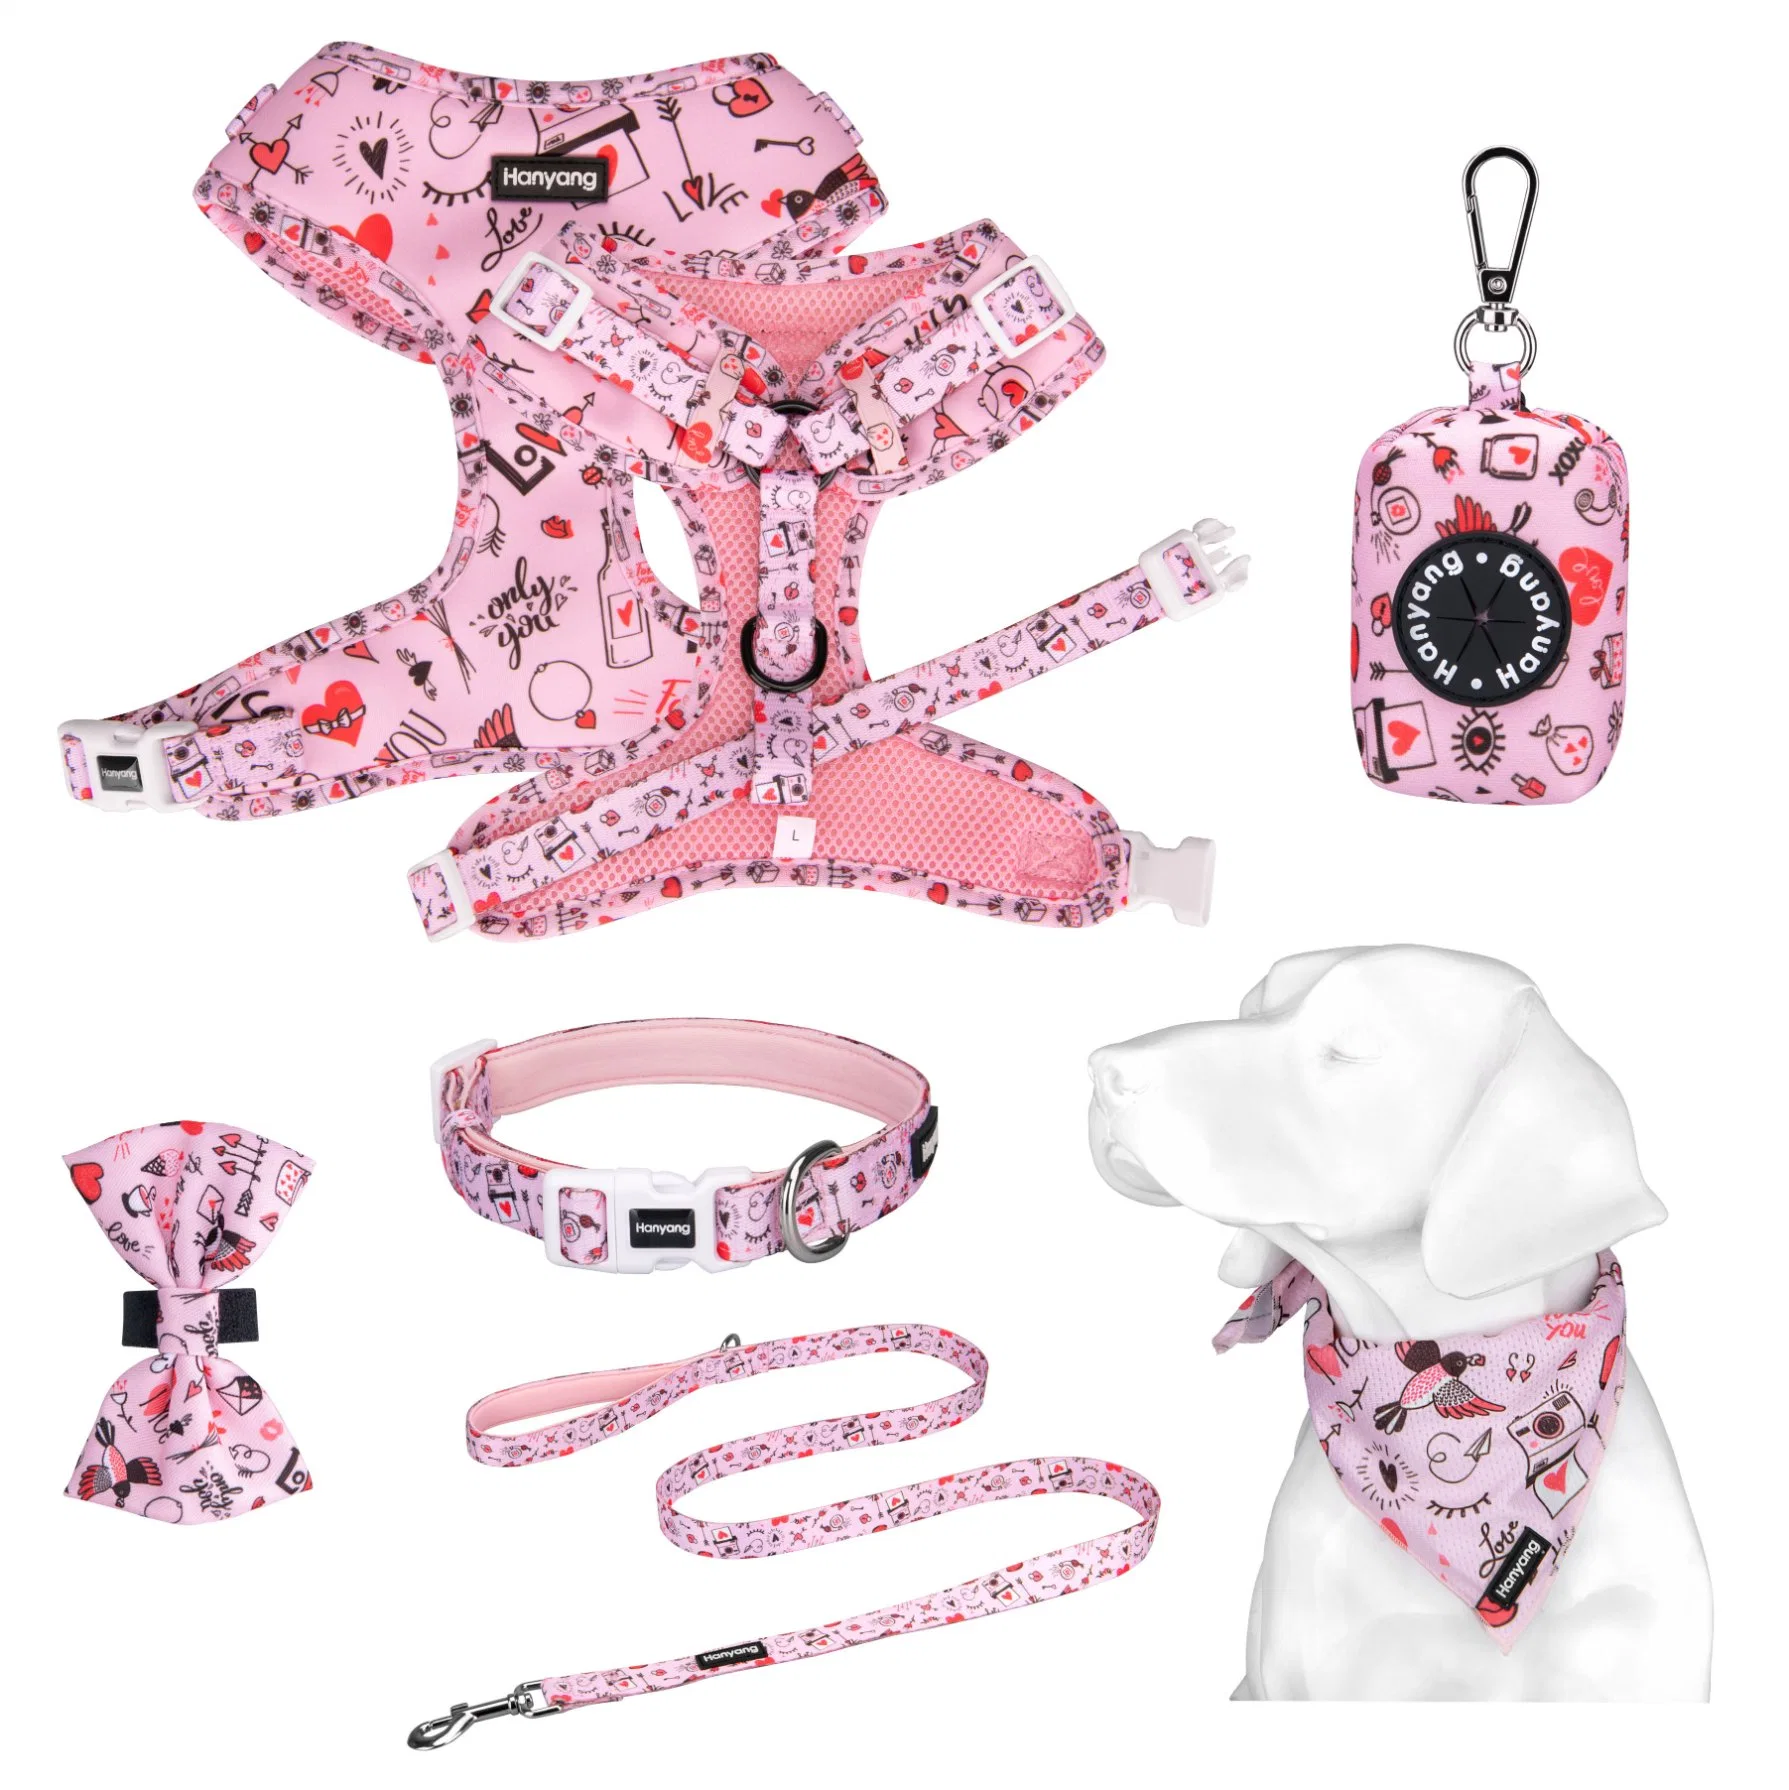 Hanyang Reversible ajustable arnés perro accesorios a juego con el modelo personalizado arnés perro Añadir etiqueta de la marca